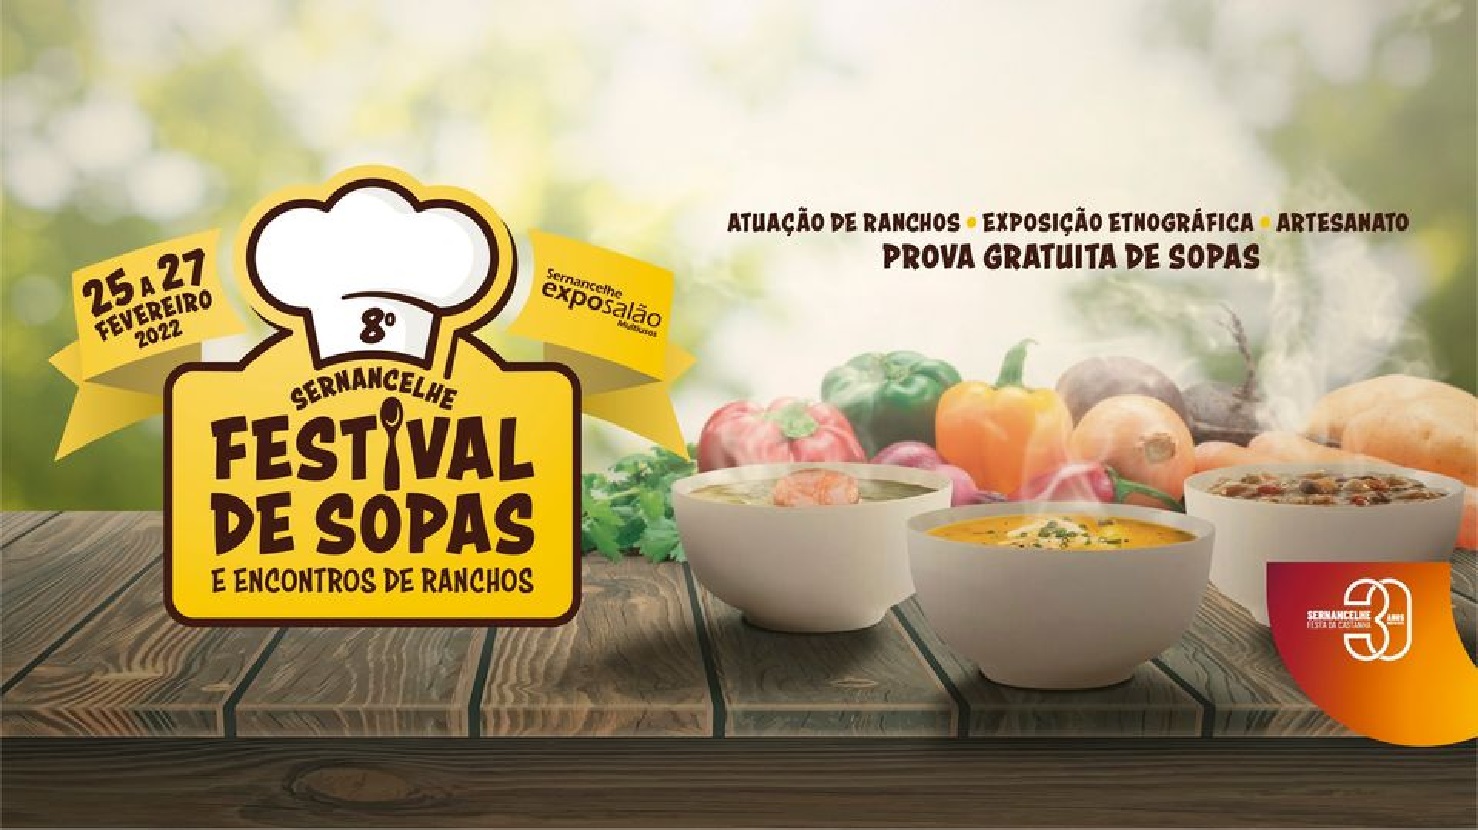 O Festival de Sopas e Encontro de Ranchos em Sernancelhe, na sua 8ª edição, tem data marcada para 25, 26 e 27 de fevereiro no Expo Salão de Sernancelhe.